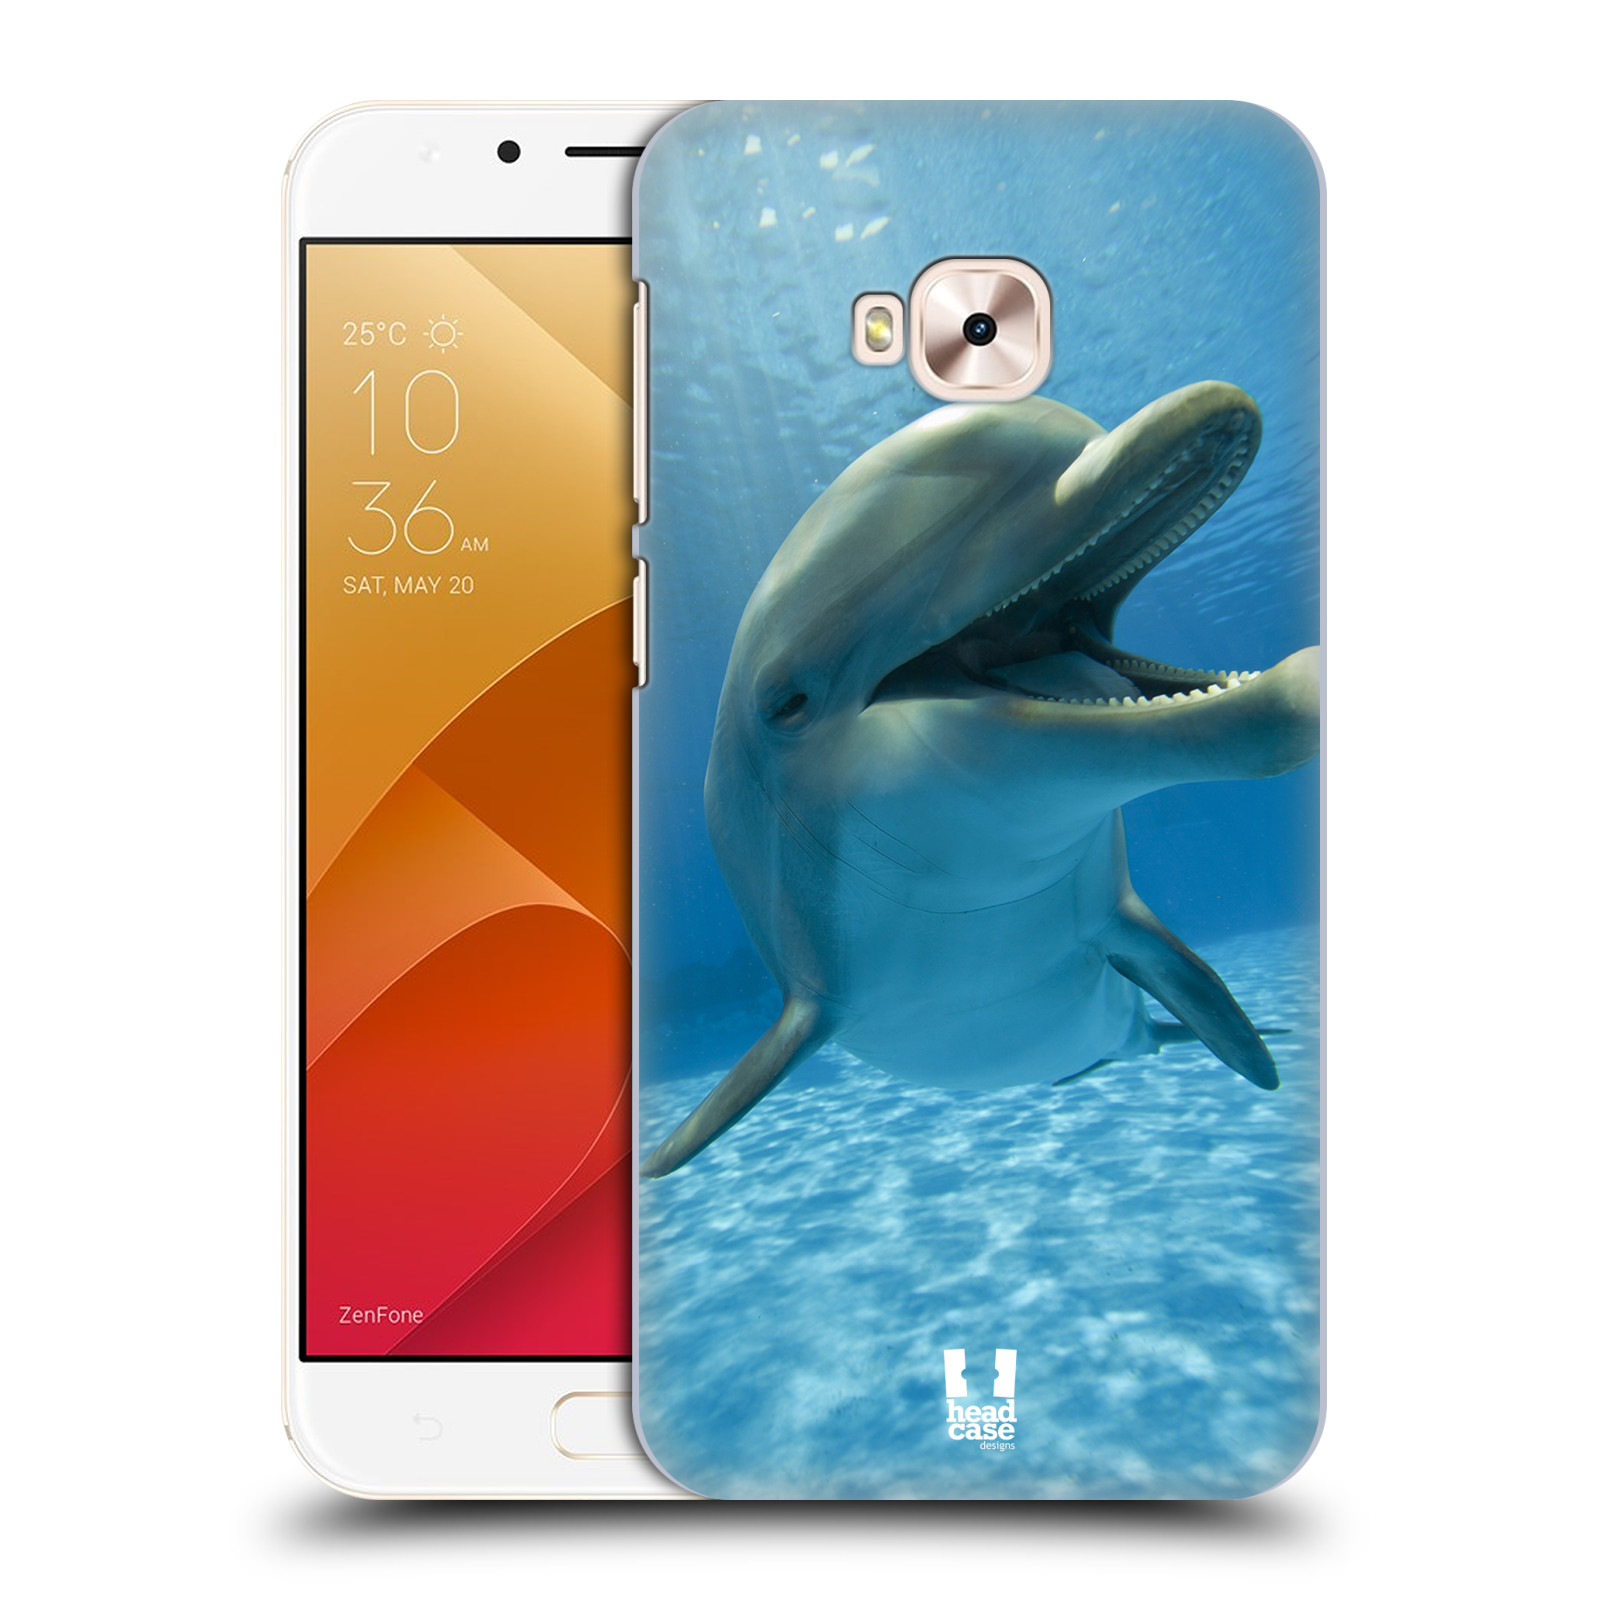 Zadní obal pro mobil Asus Zenfone 4 Selfie Pro ZD552KL - HEAD CASE - Svět zvířat delfín v moři